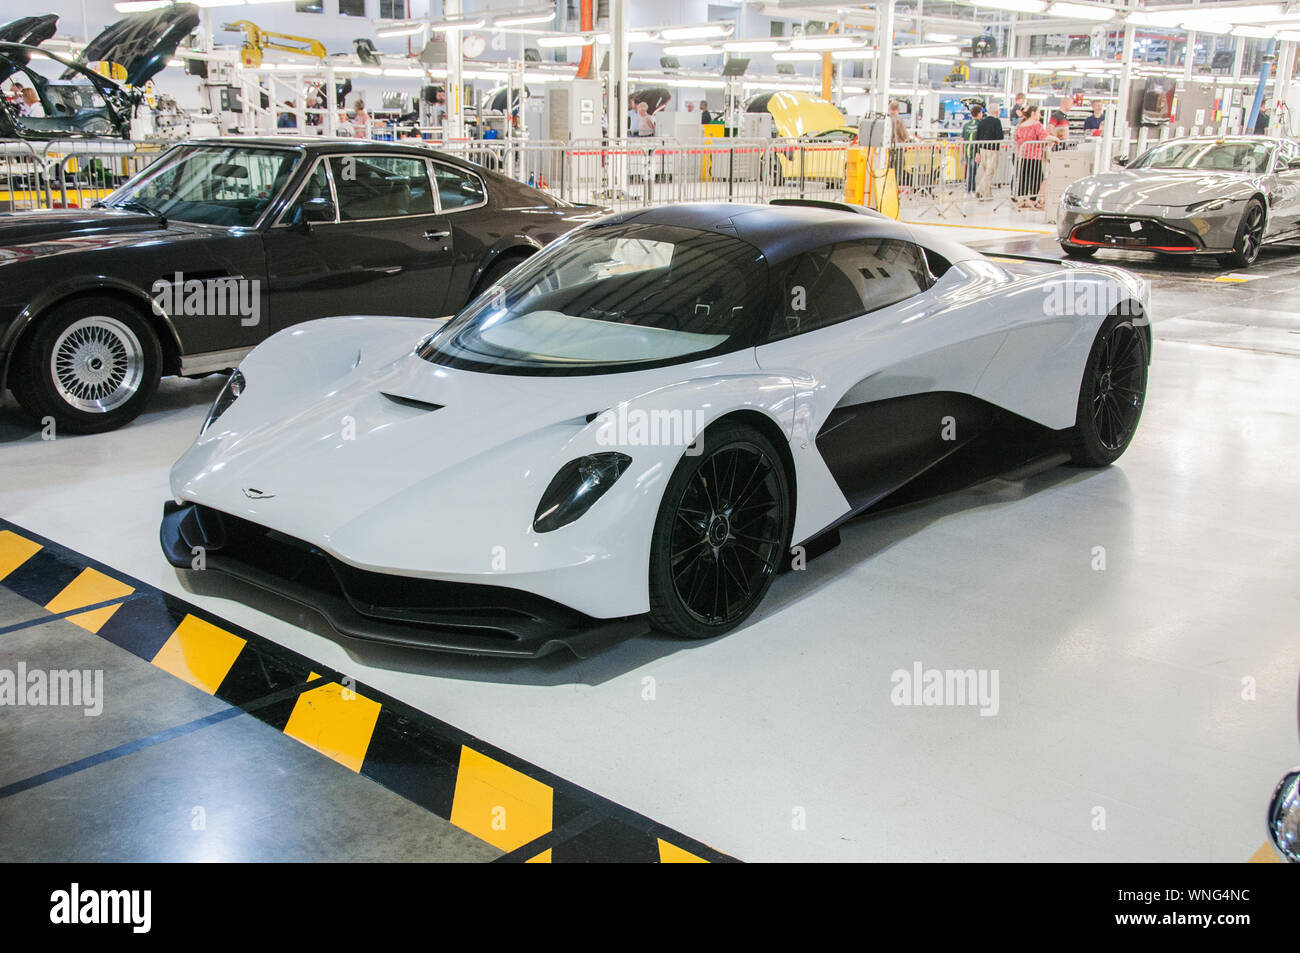 Aston Martin fabricant de voitures de luxe- Valhalla Banque D'Images